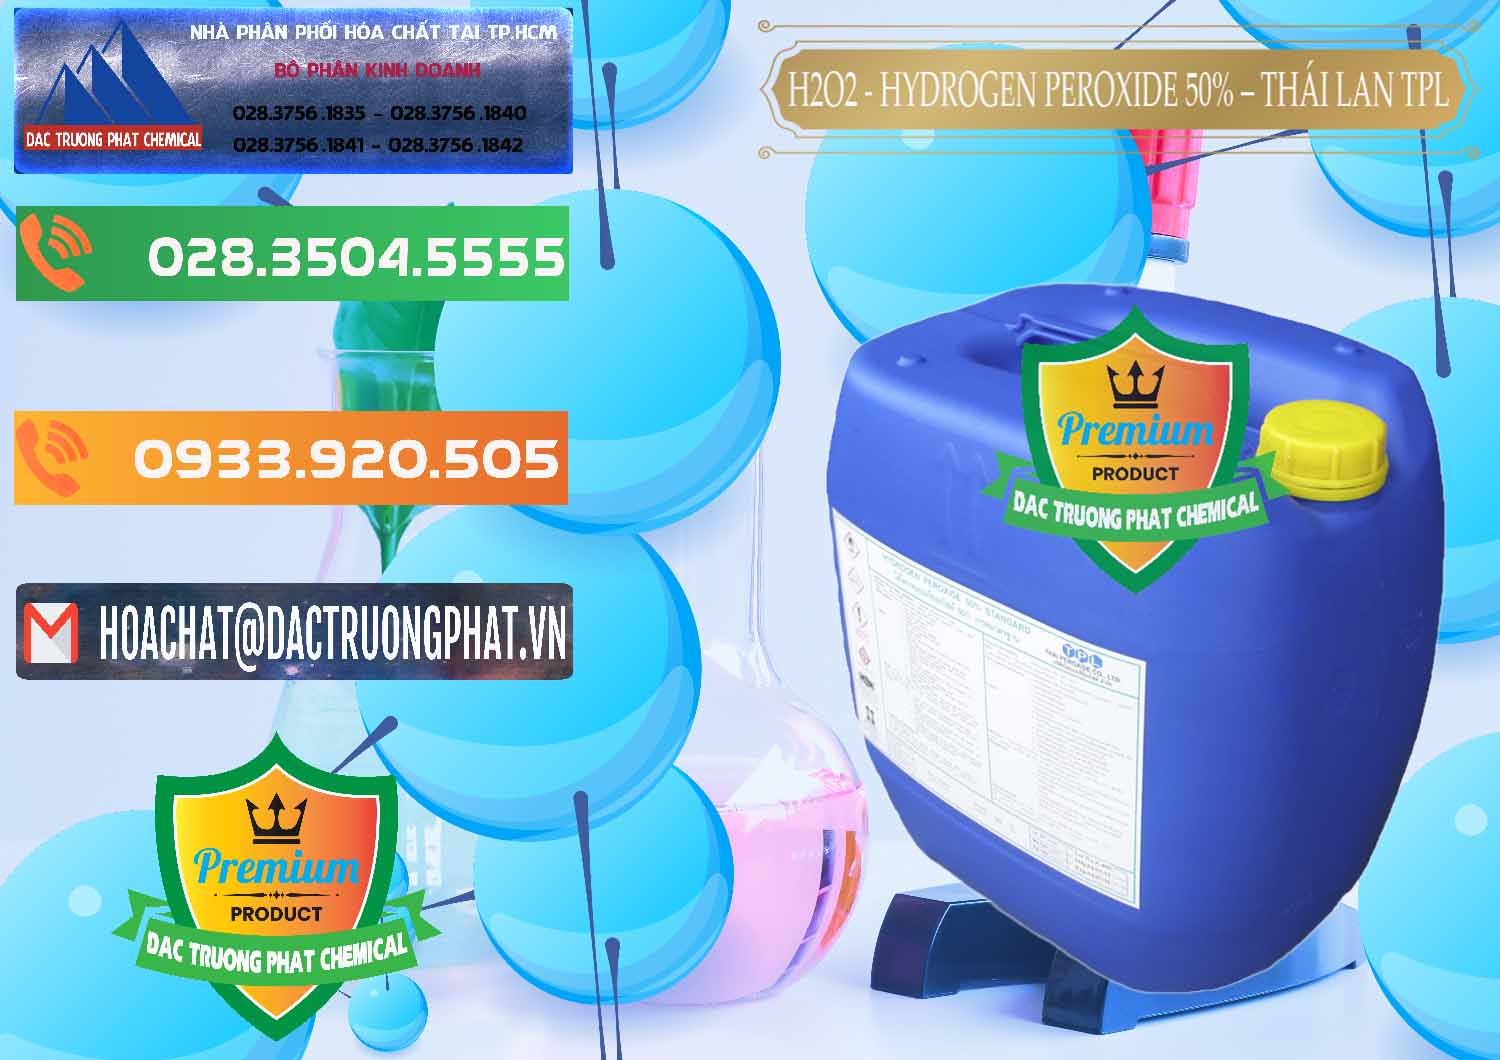 Chuyên cung cấp - bán H2O2 - Hydrogen Peroxide 50% Thái Lan TPL - 0076 - Bán - cung cấp hóa chất tại TP.HCM - hoachatxulynuoc.com.vn